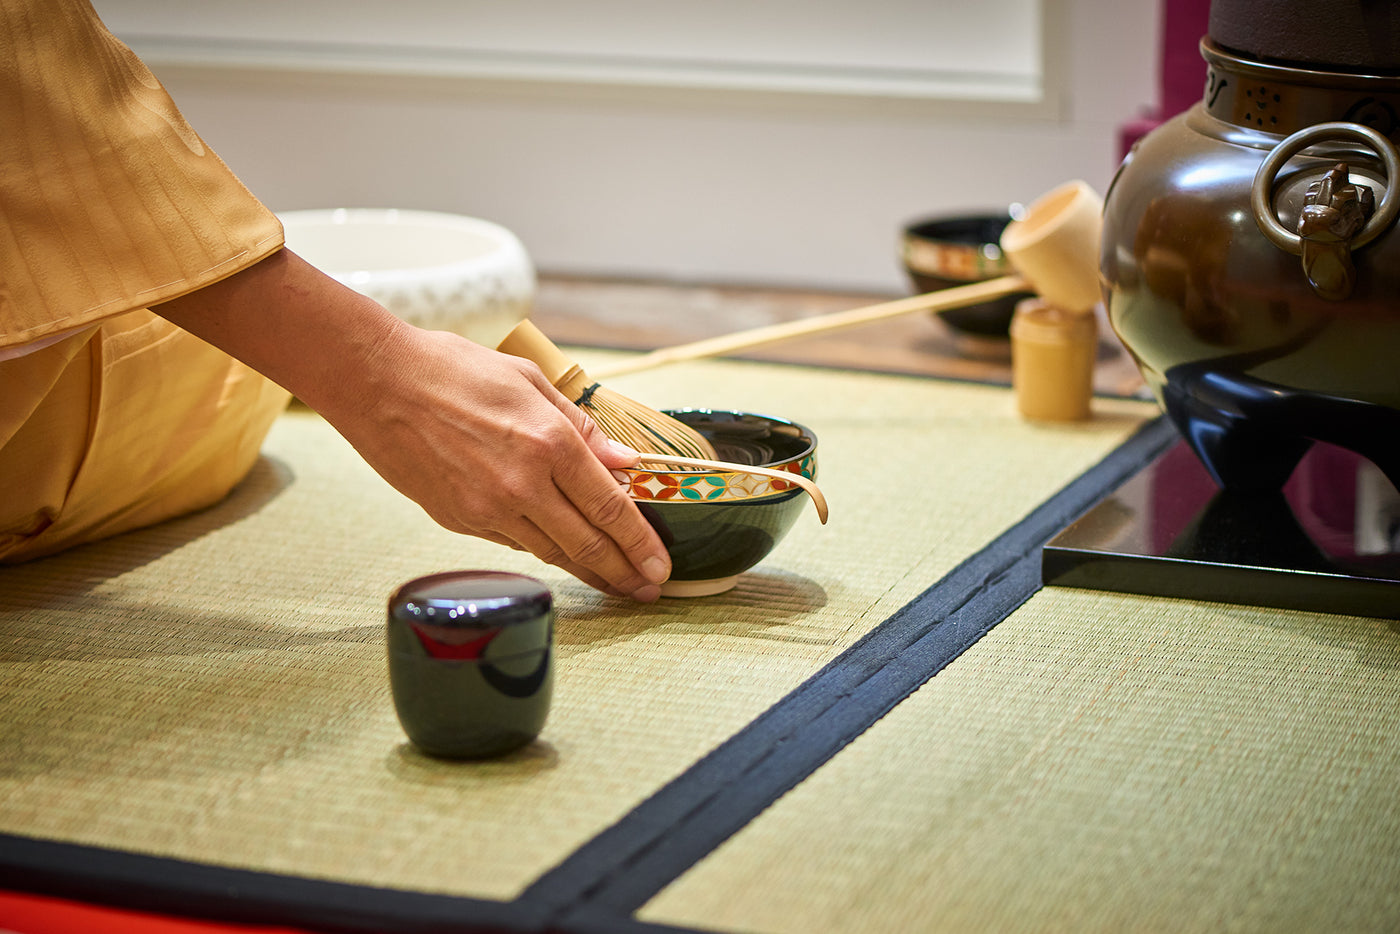 Participez à une cérémonie du thé traditionnelle japonaise !